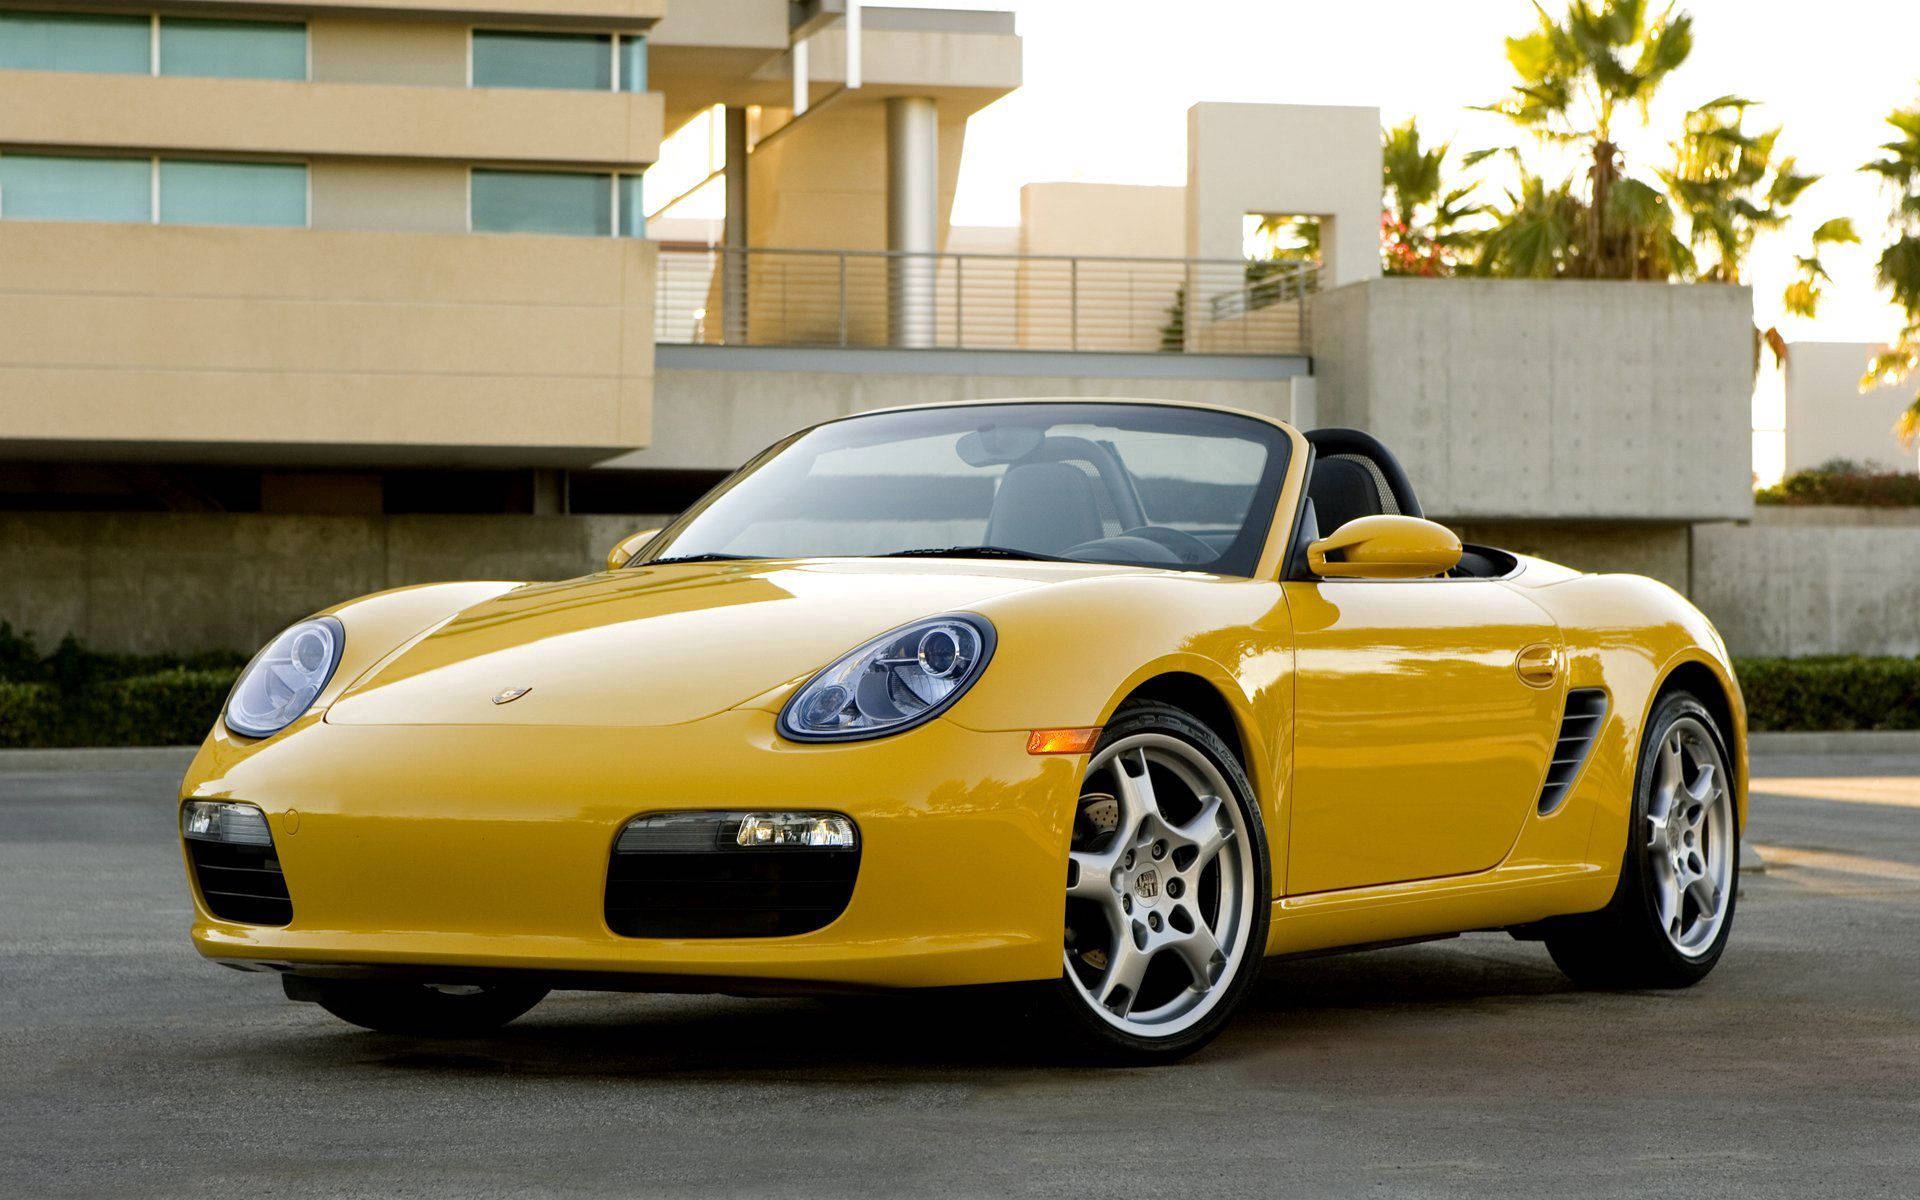 2008 Porsche Boxster Yellow Convertible